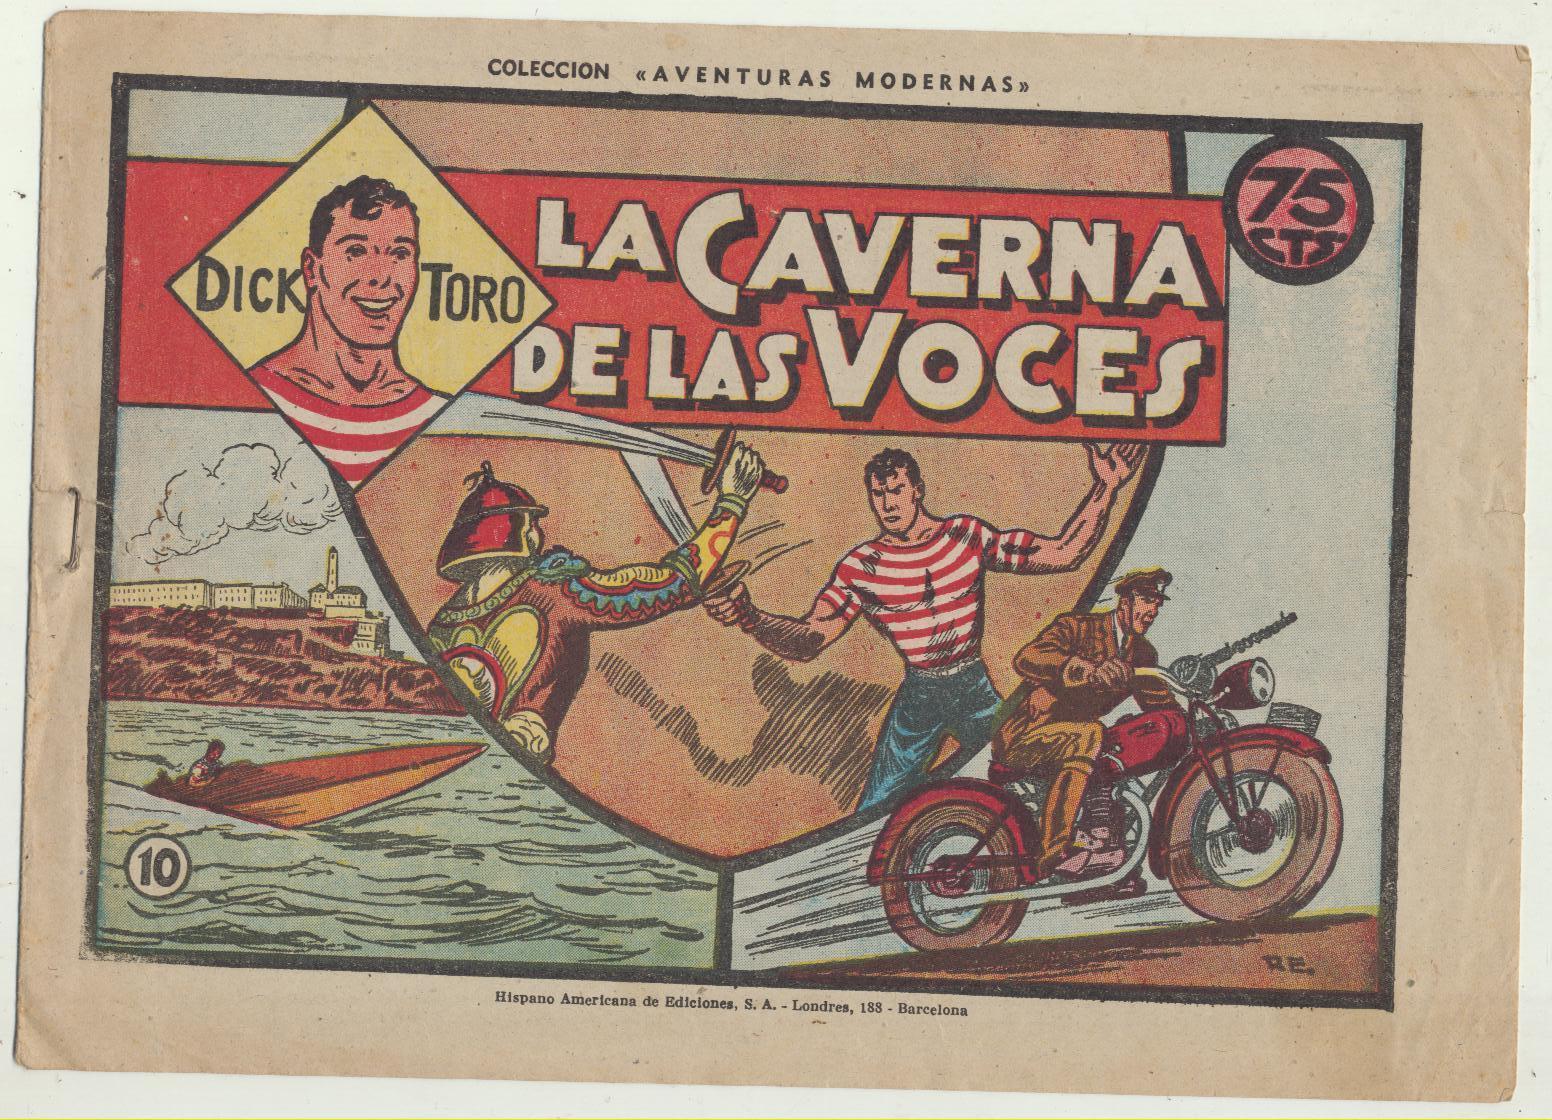 Dick Toro nº 10. Hispano Americana 1946